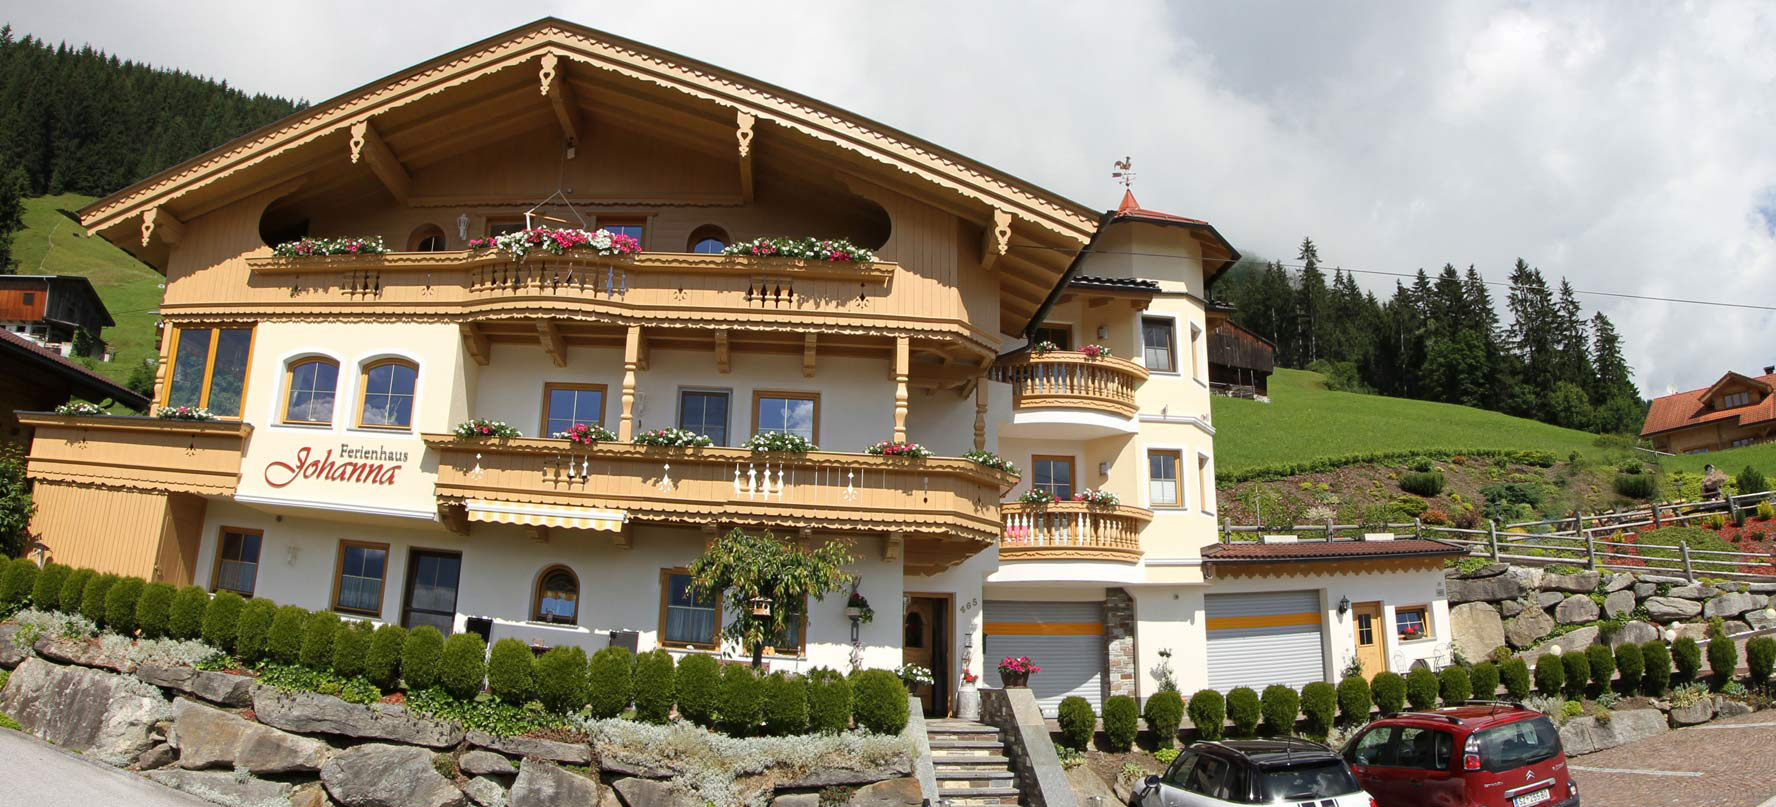 Ferienhaus Johanna im Zillertal Ferienwohnungen in der Ferienregion Hippach-Mayrhofen